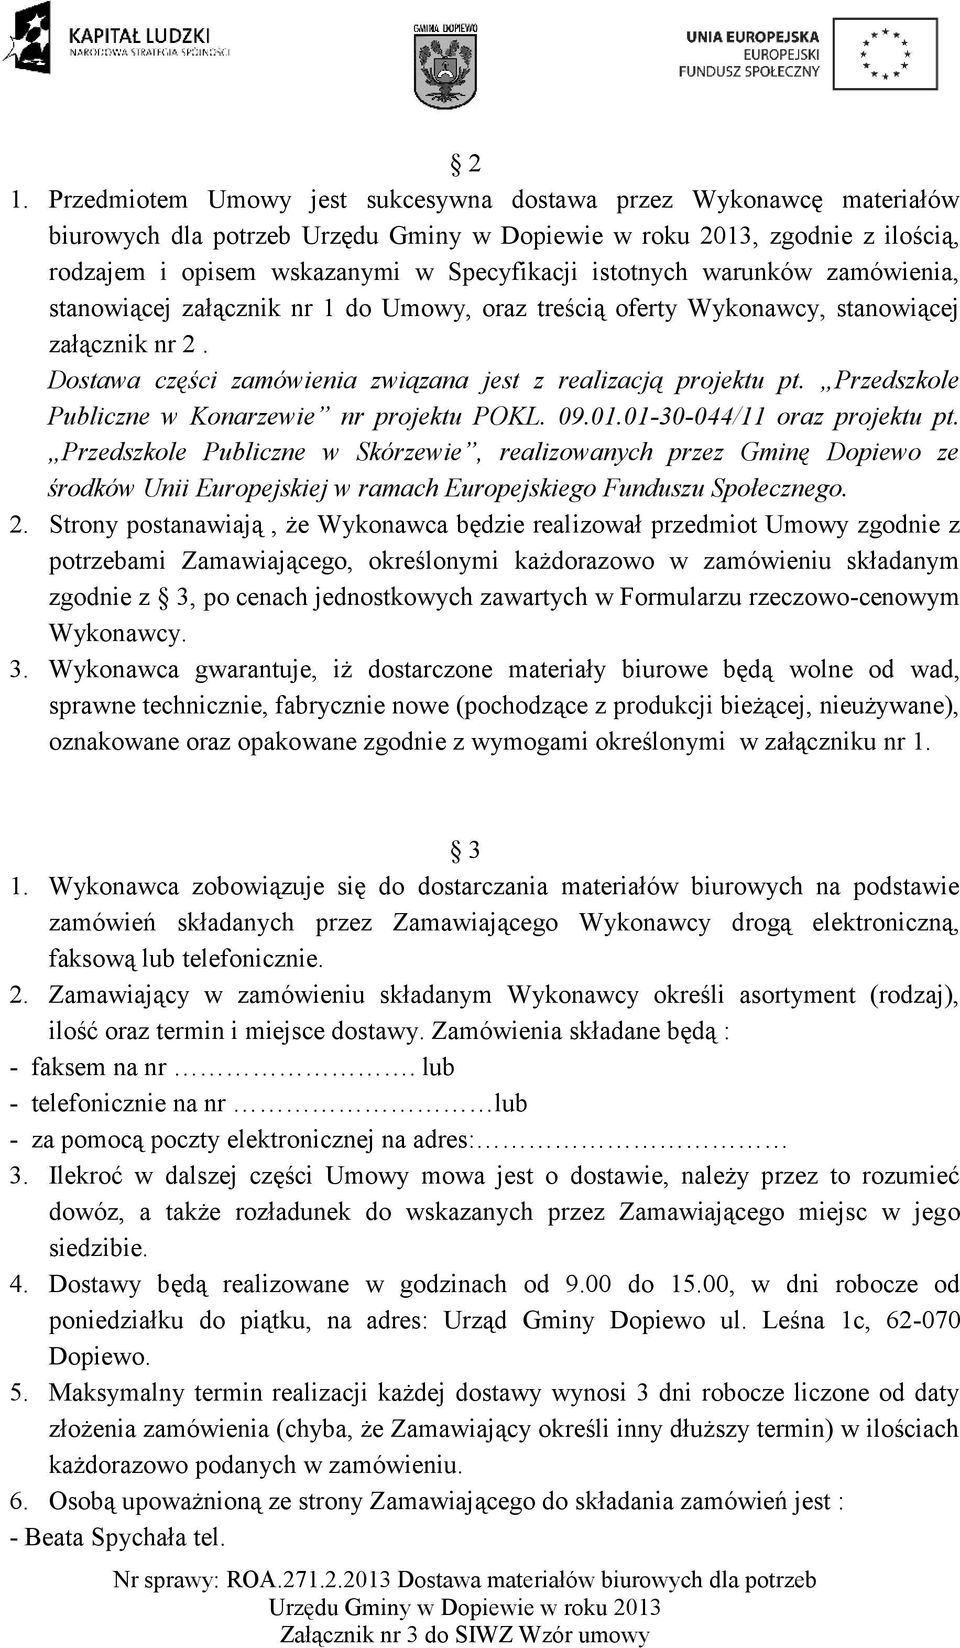 Przedszkole Publiczne w Konarzewie nr projektu POKL. 09.01.01-30-044/11 oraz projektu pt.